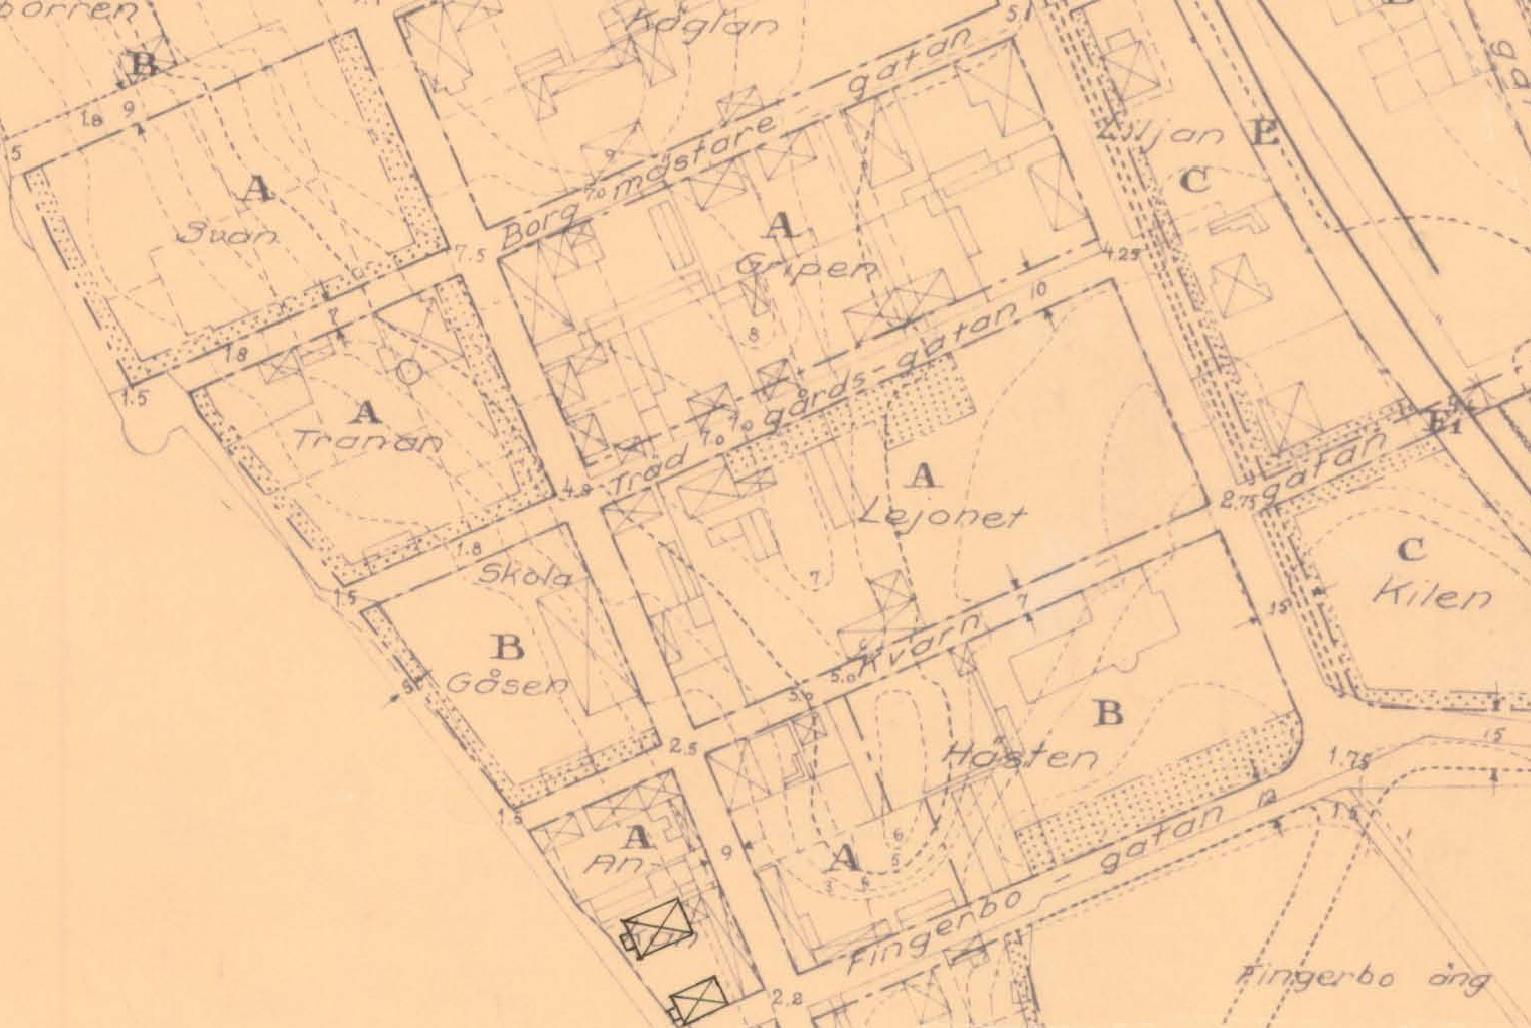 Fig. 3: Stadsplan för Lindesbergs stad från 1925. Gäller idag som detaljplan för det aktuella planområdet.